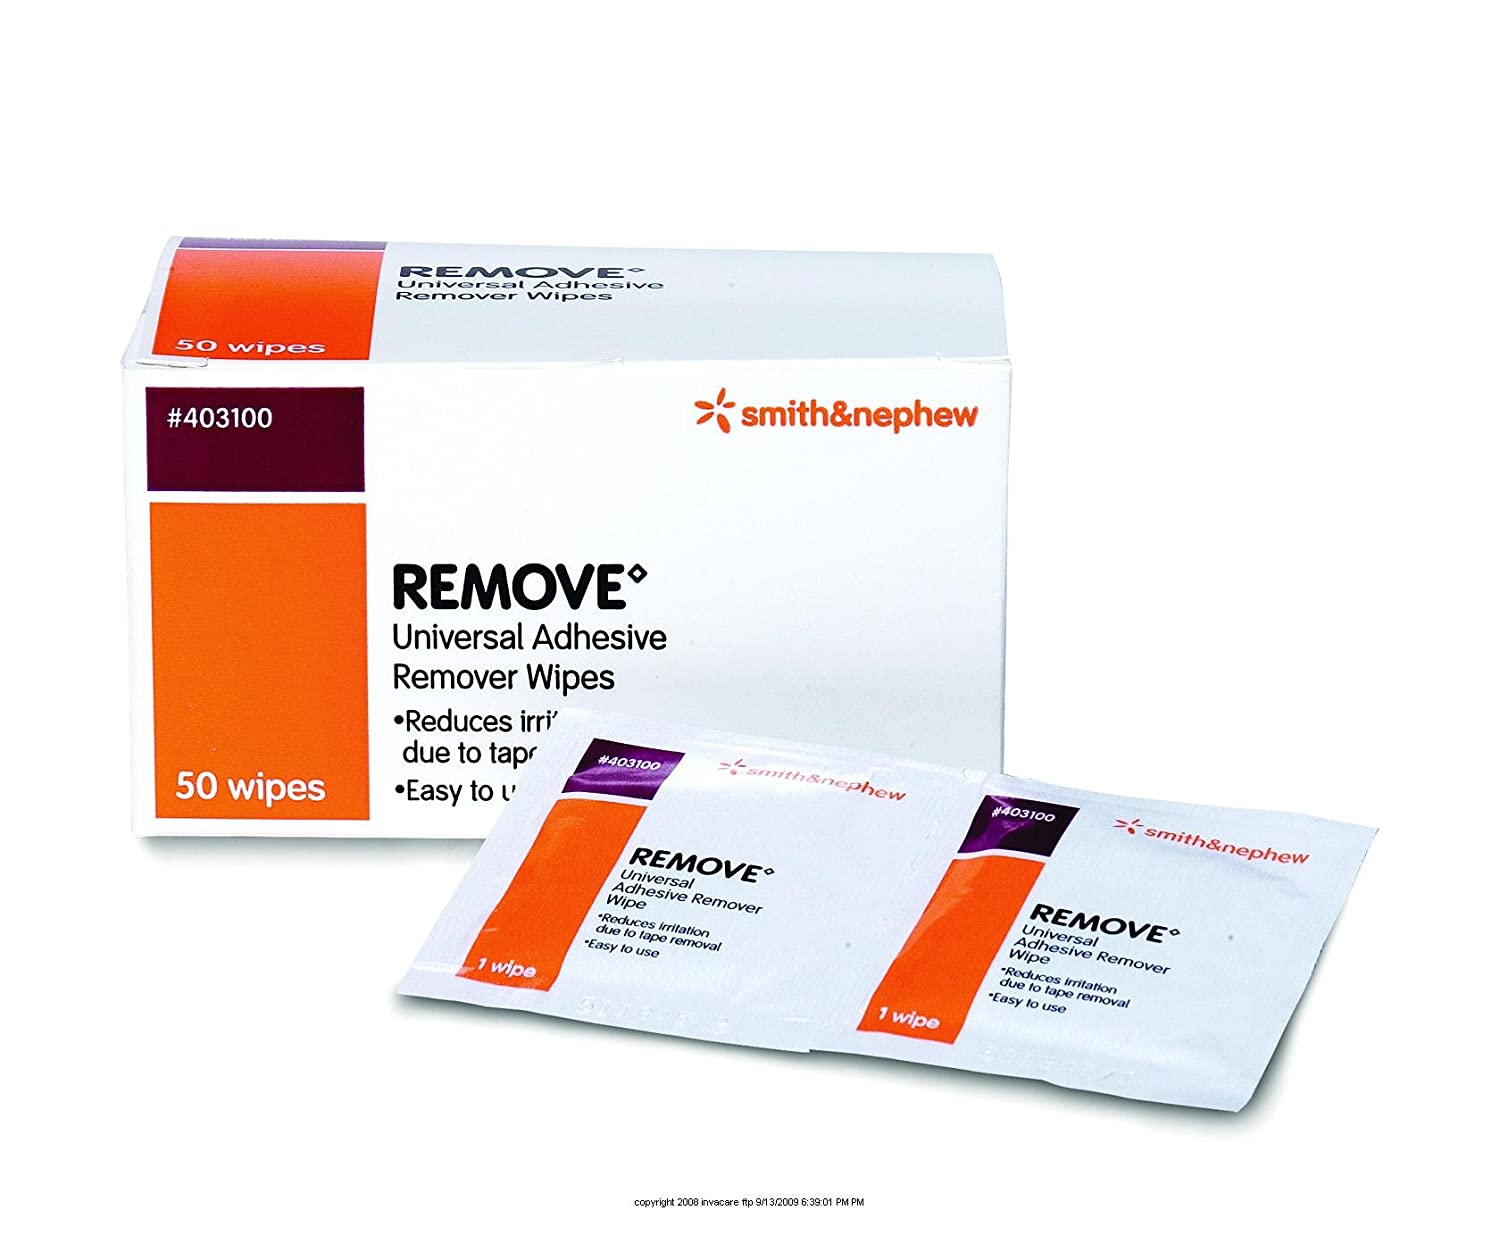 Smith & Nephew UNI-SOLVE Adhesive Remover, Medical Adhesive Remover for Medical  Tape and Adhesive Appliances